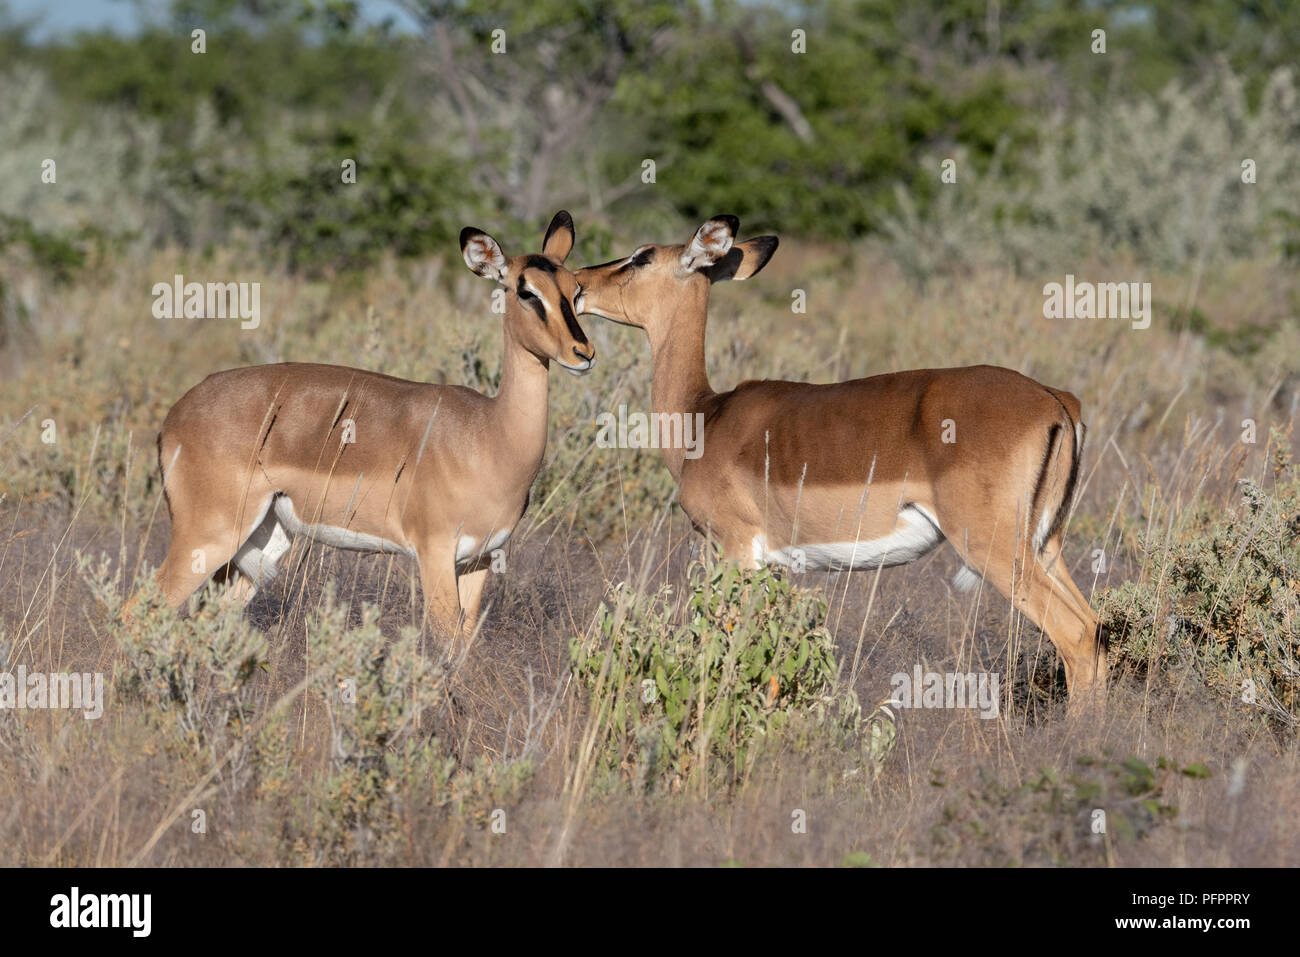 Una pareja de dos mujeres impala amorosamente el uno para el otro pie en el césped y sabana arbolada, el Parque Nacional de Etosha, Namibia Foto de stock